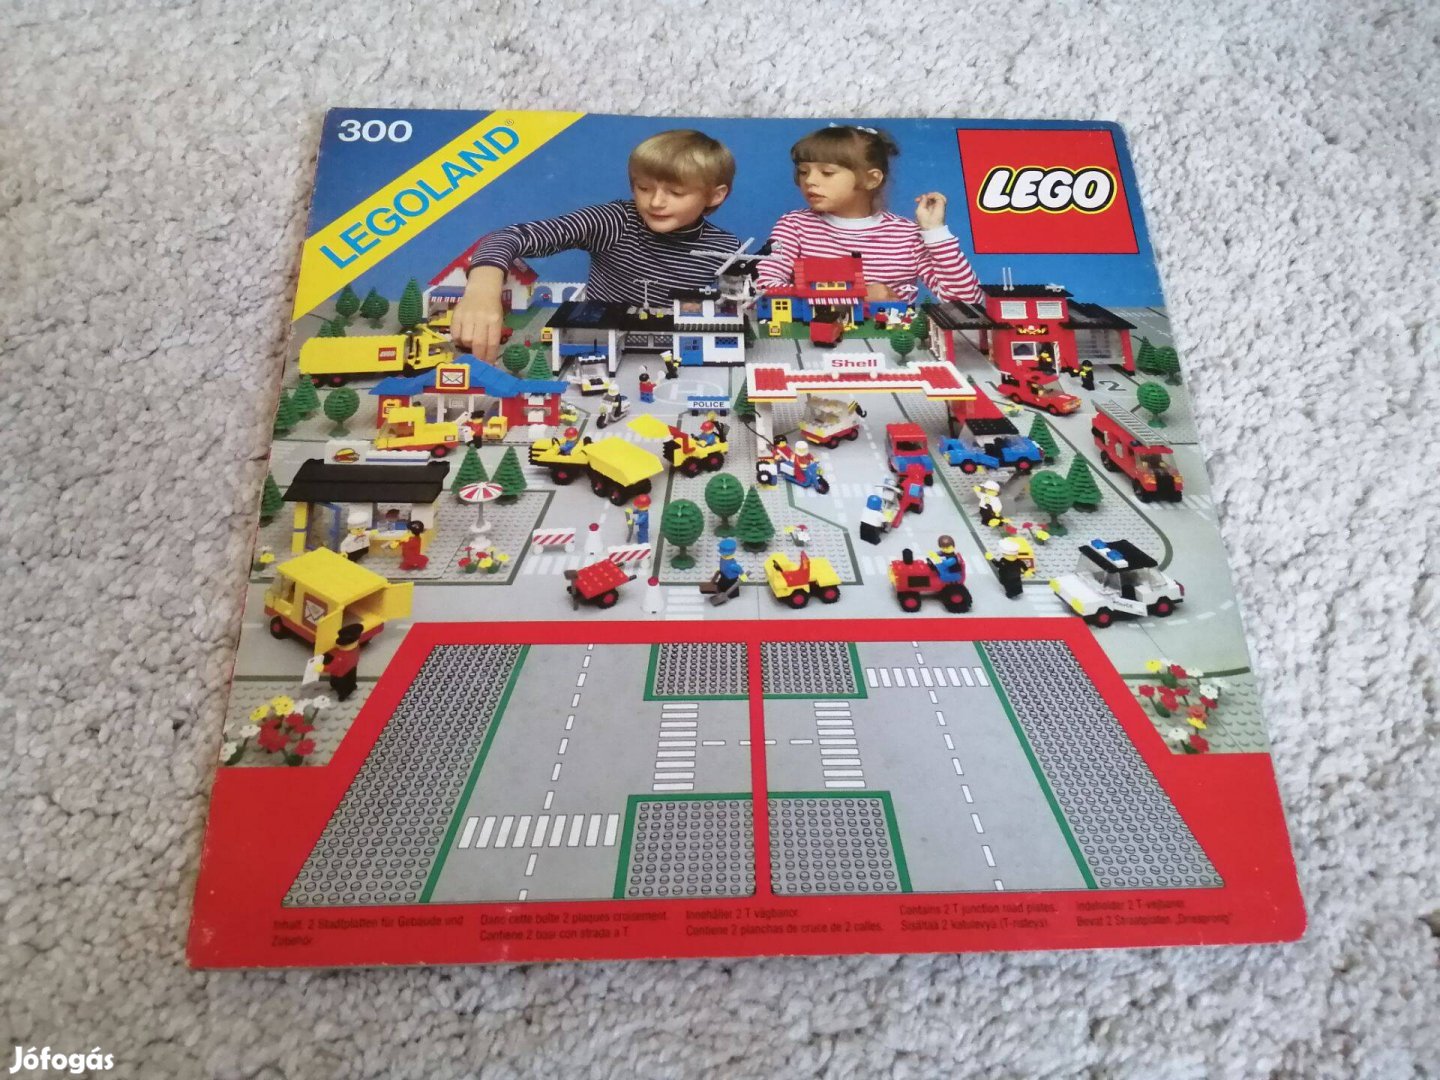 LEGO 300 kereszteződés alaplap baseplate classic town